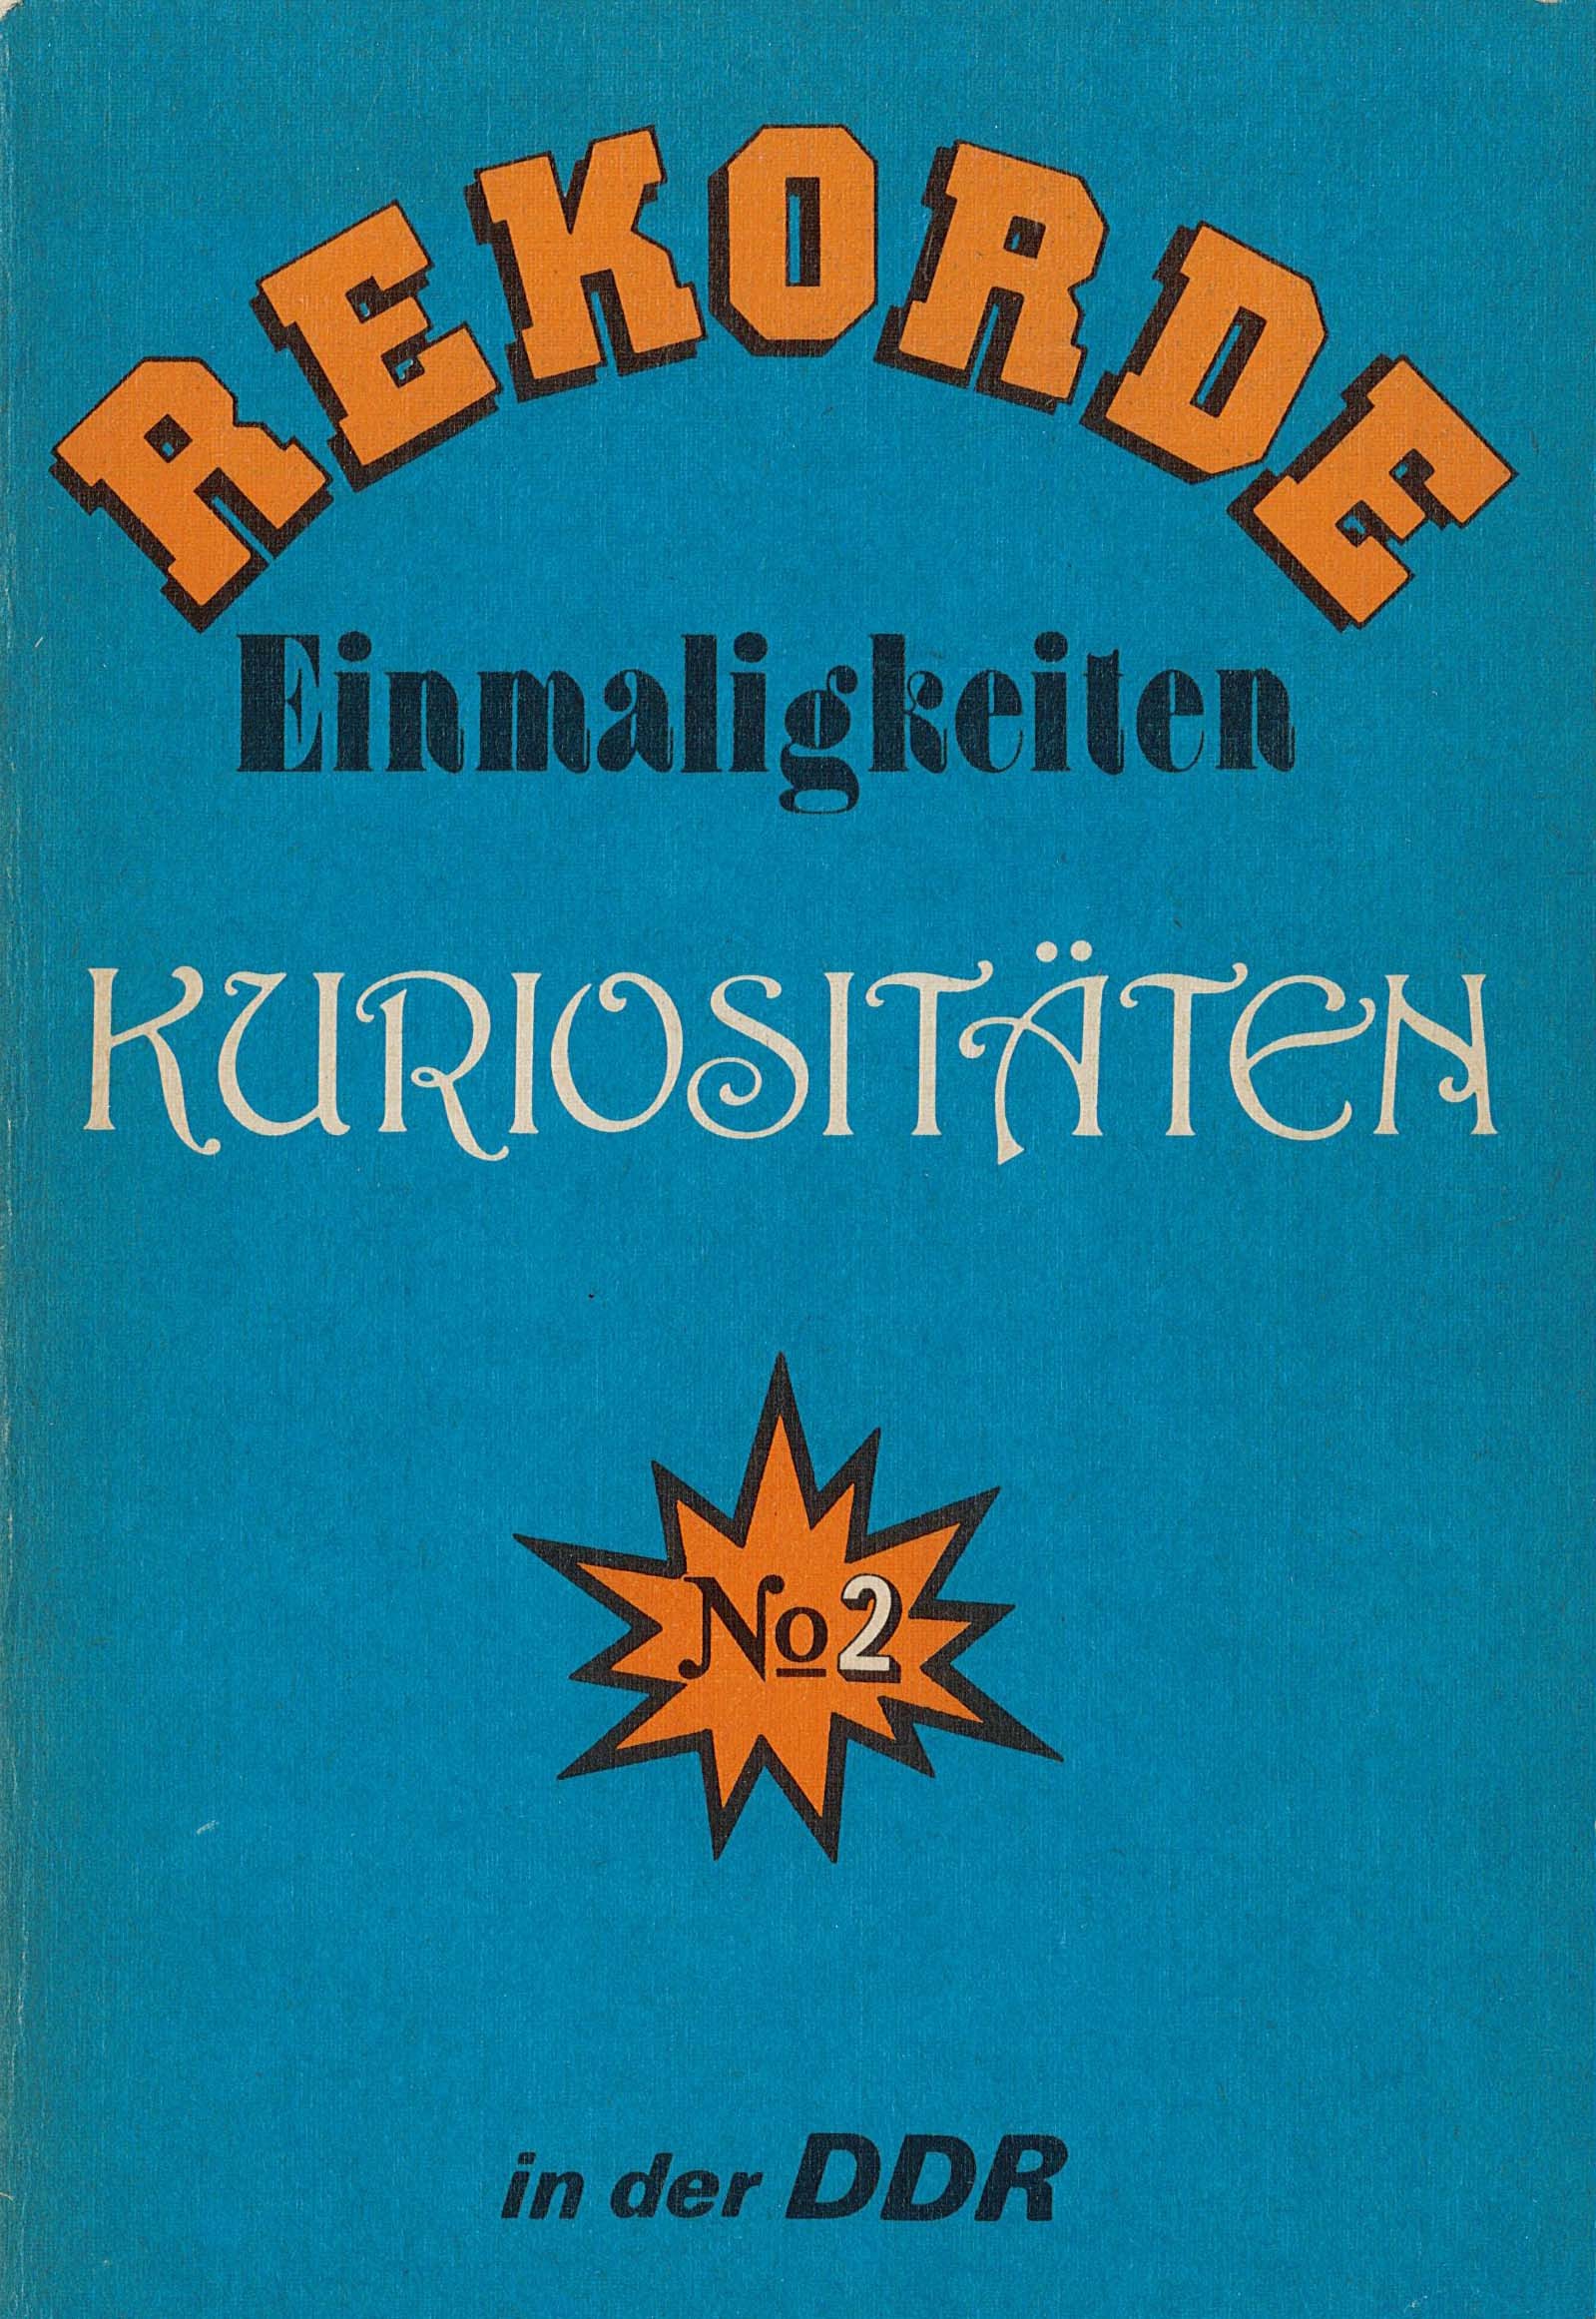 Rekorde. Einmaligkeiten. Kuriositäten in der DDR, Nr. 2 (Museum Wolmirstedt RR-F)